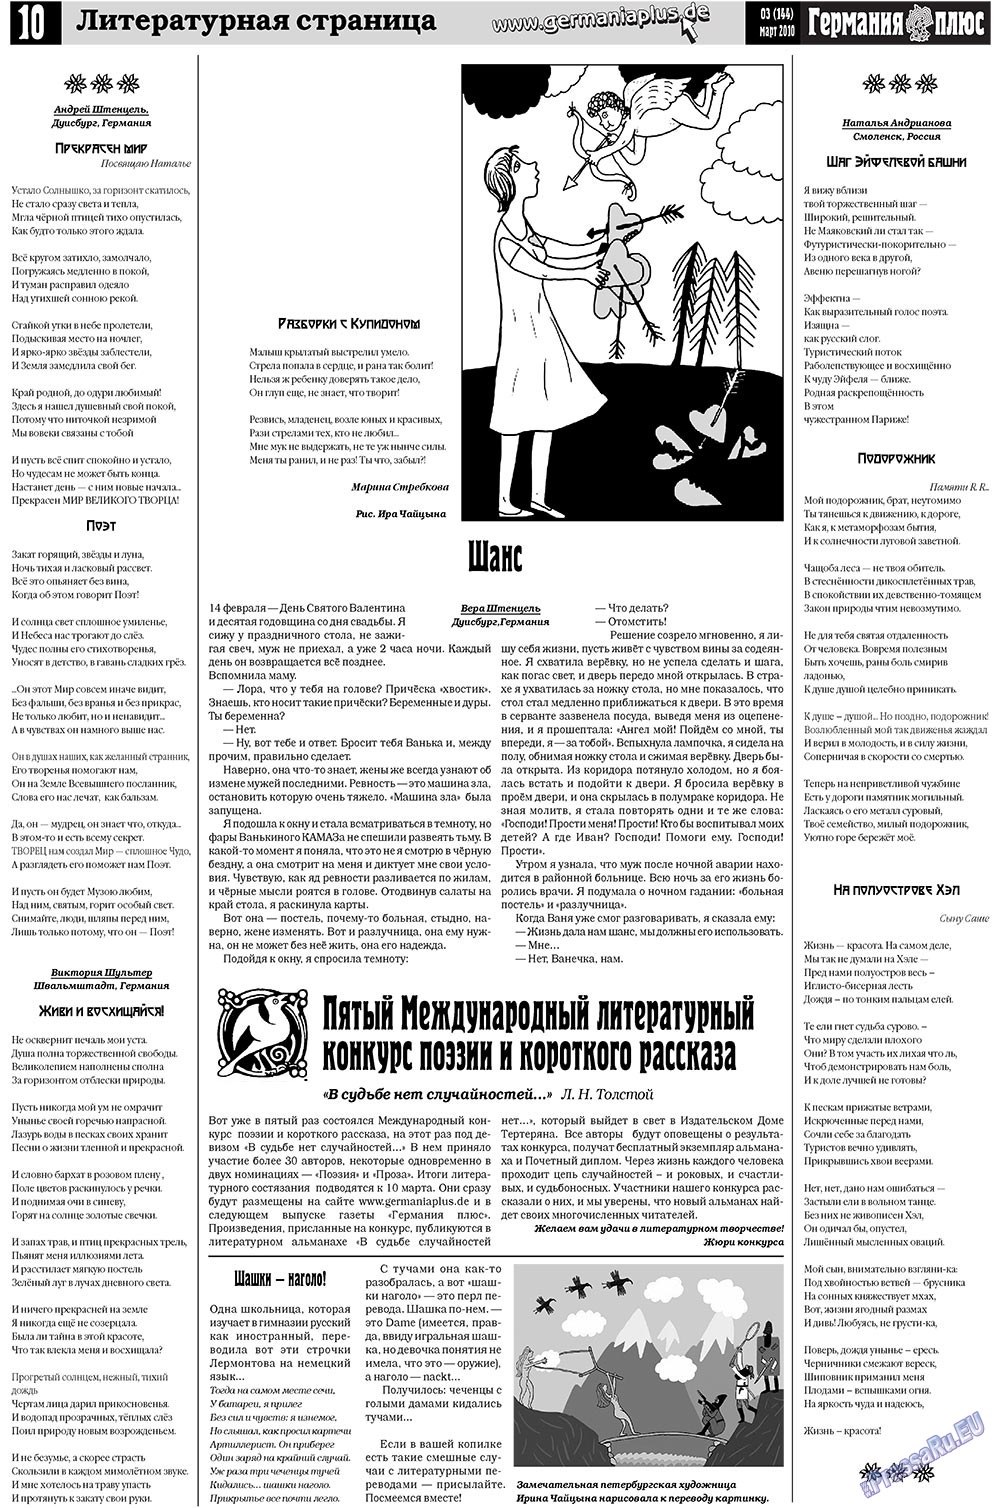 Германия плюс (газета). 2010 год, номер 3, стр. 10